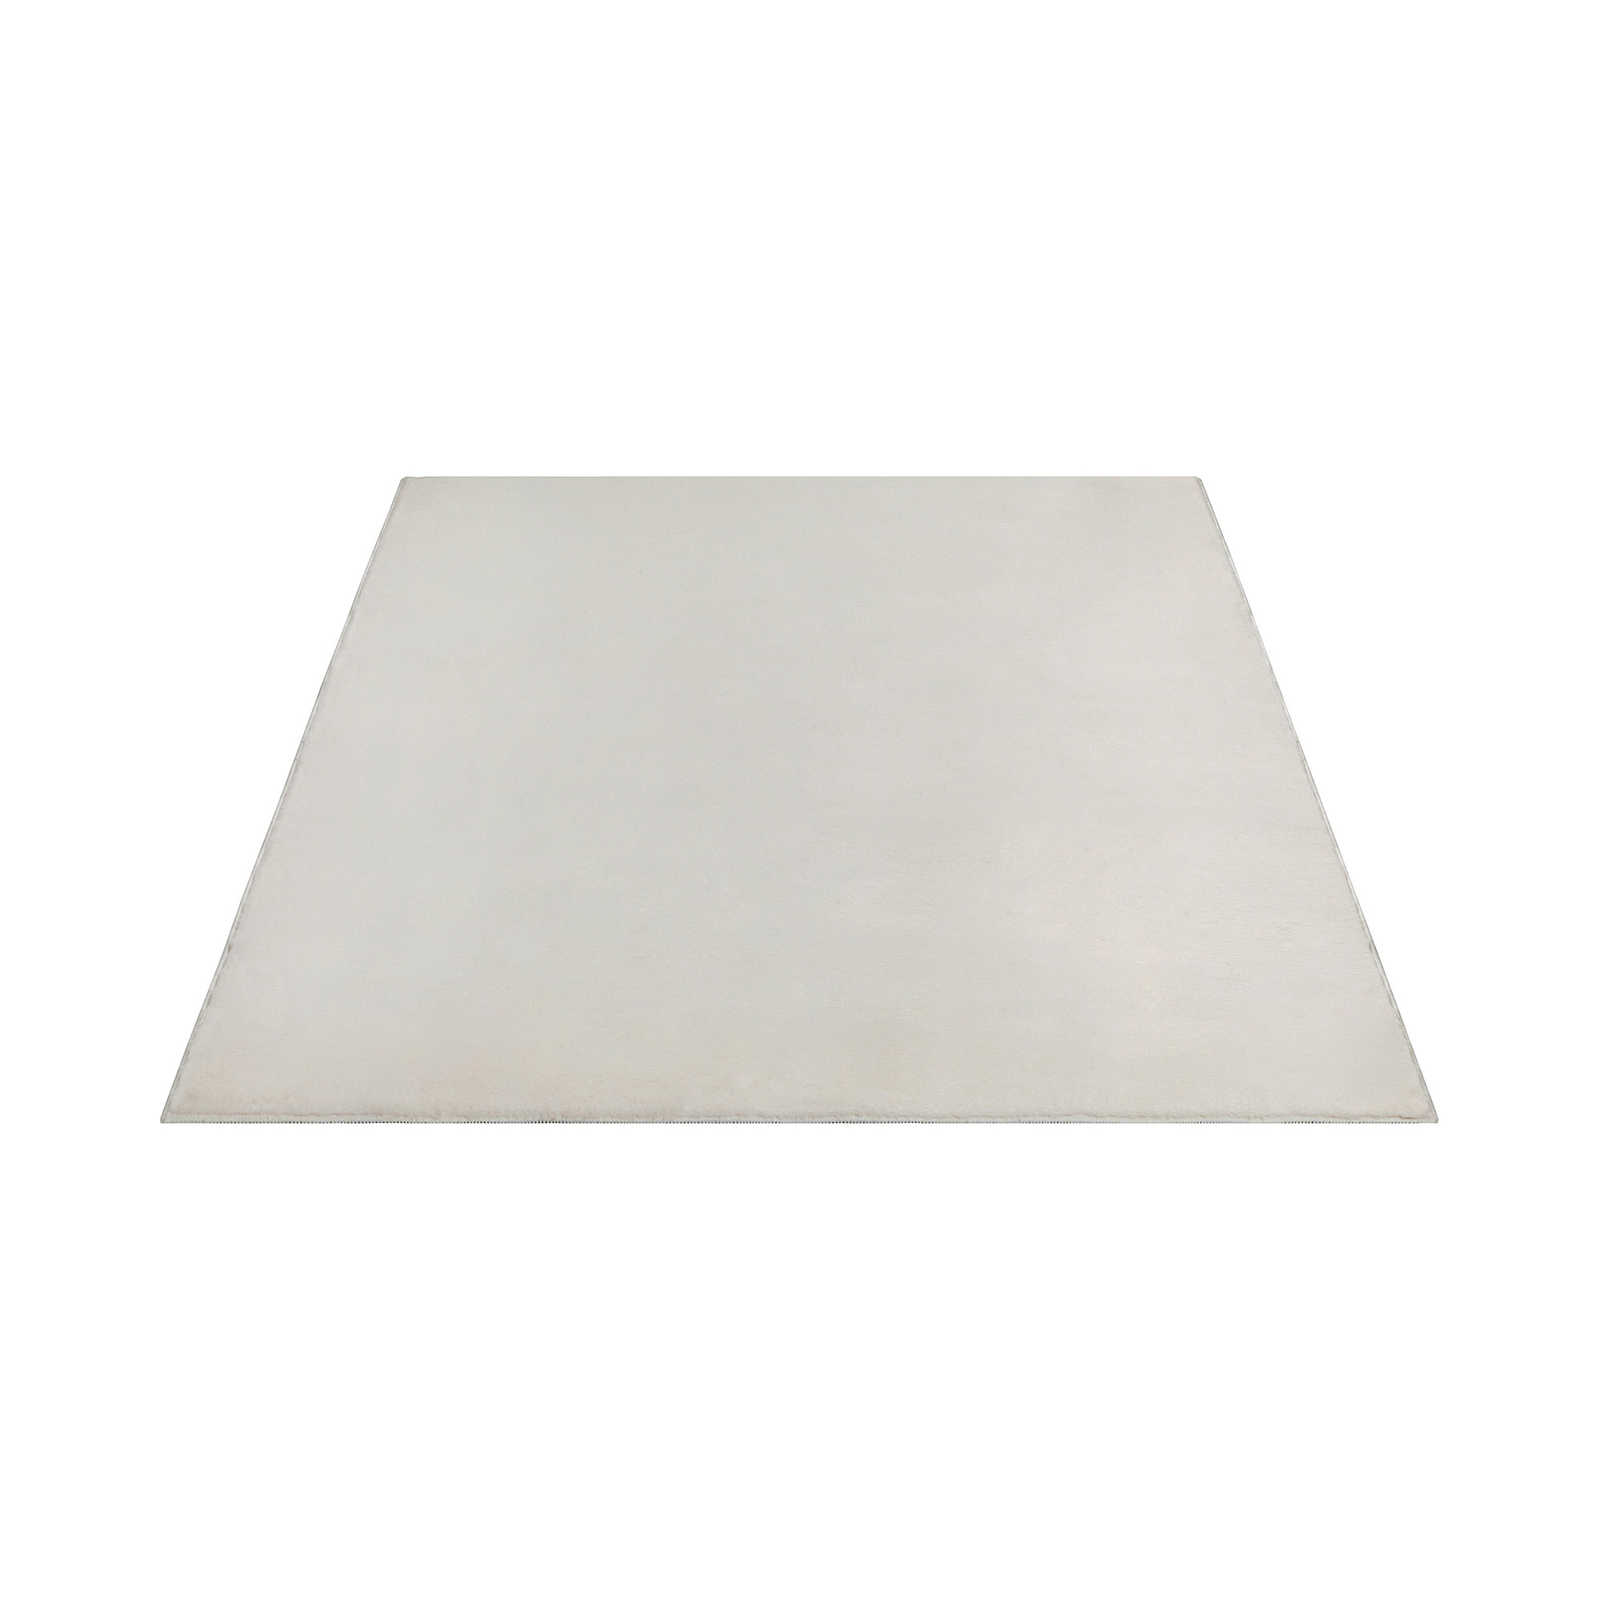 Zacht hoogpolig tapijt in crème - 280 x 200 cm
